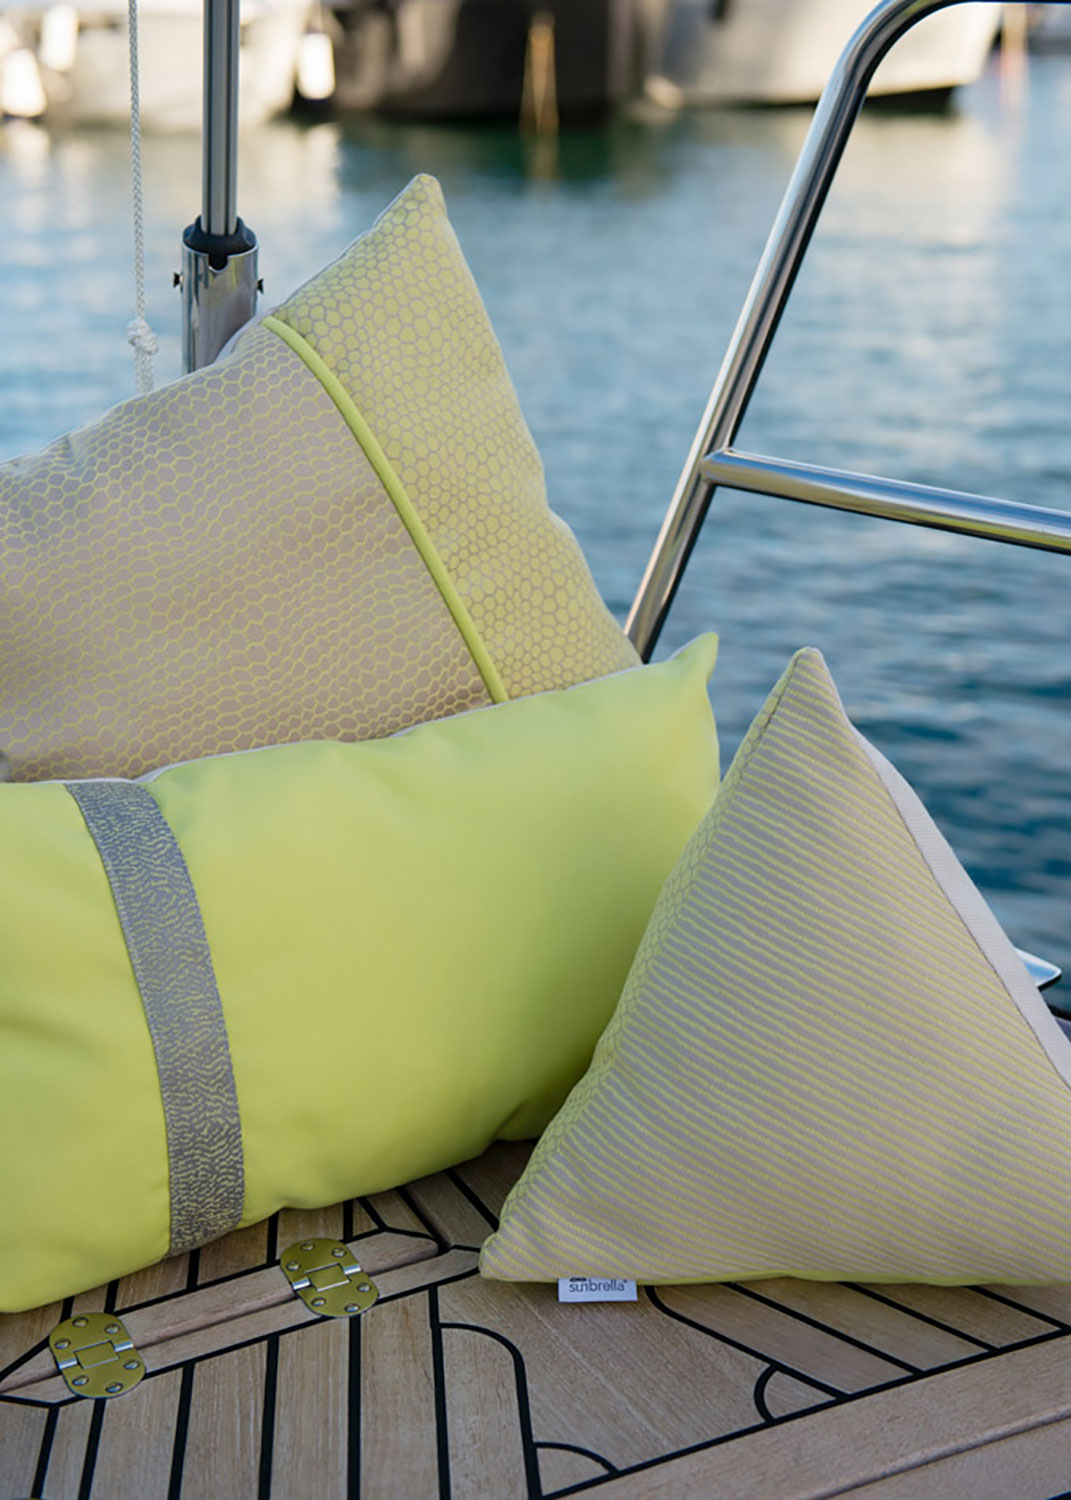 Telas Sunbrella en amarillo verdoso brindan contraste a esta cubierta de bote.